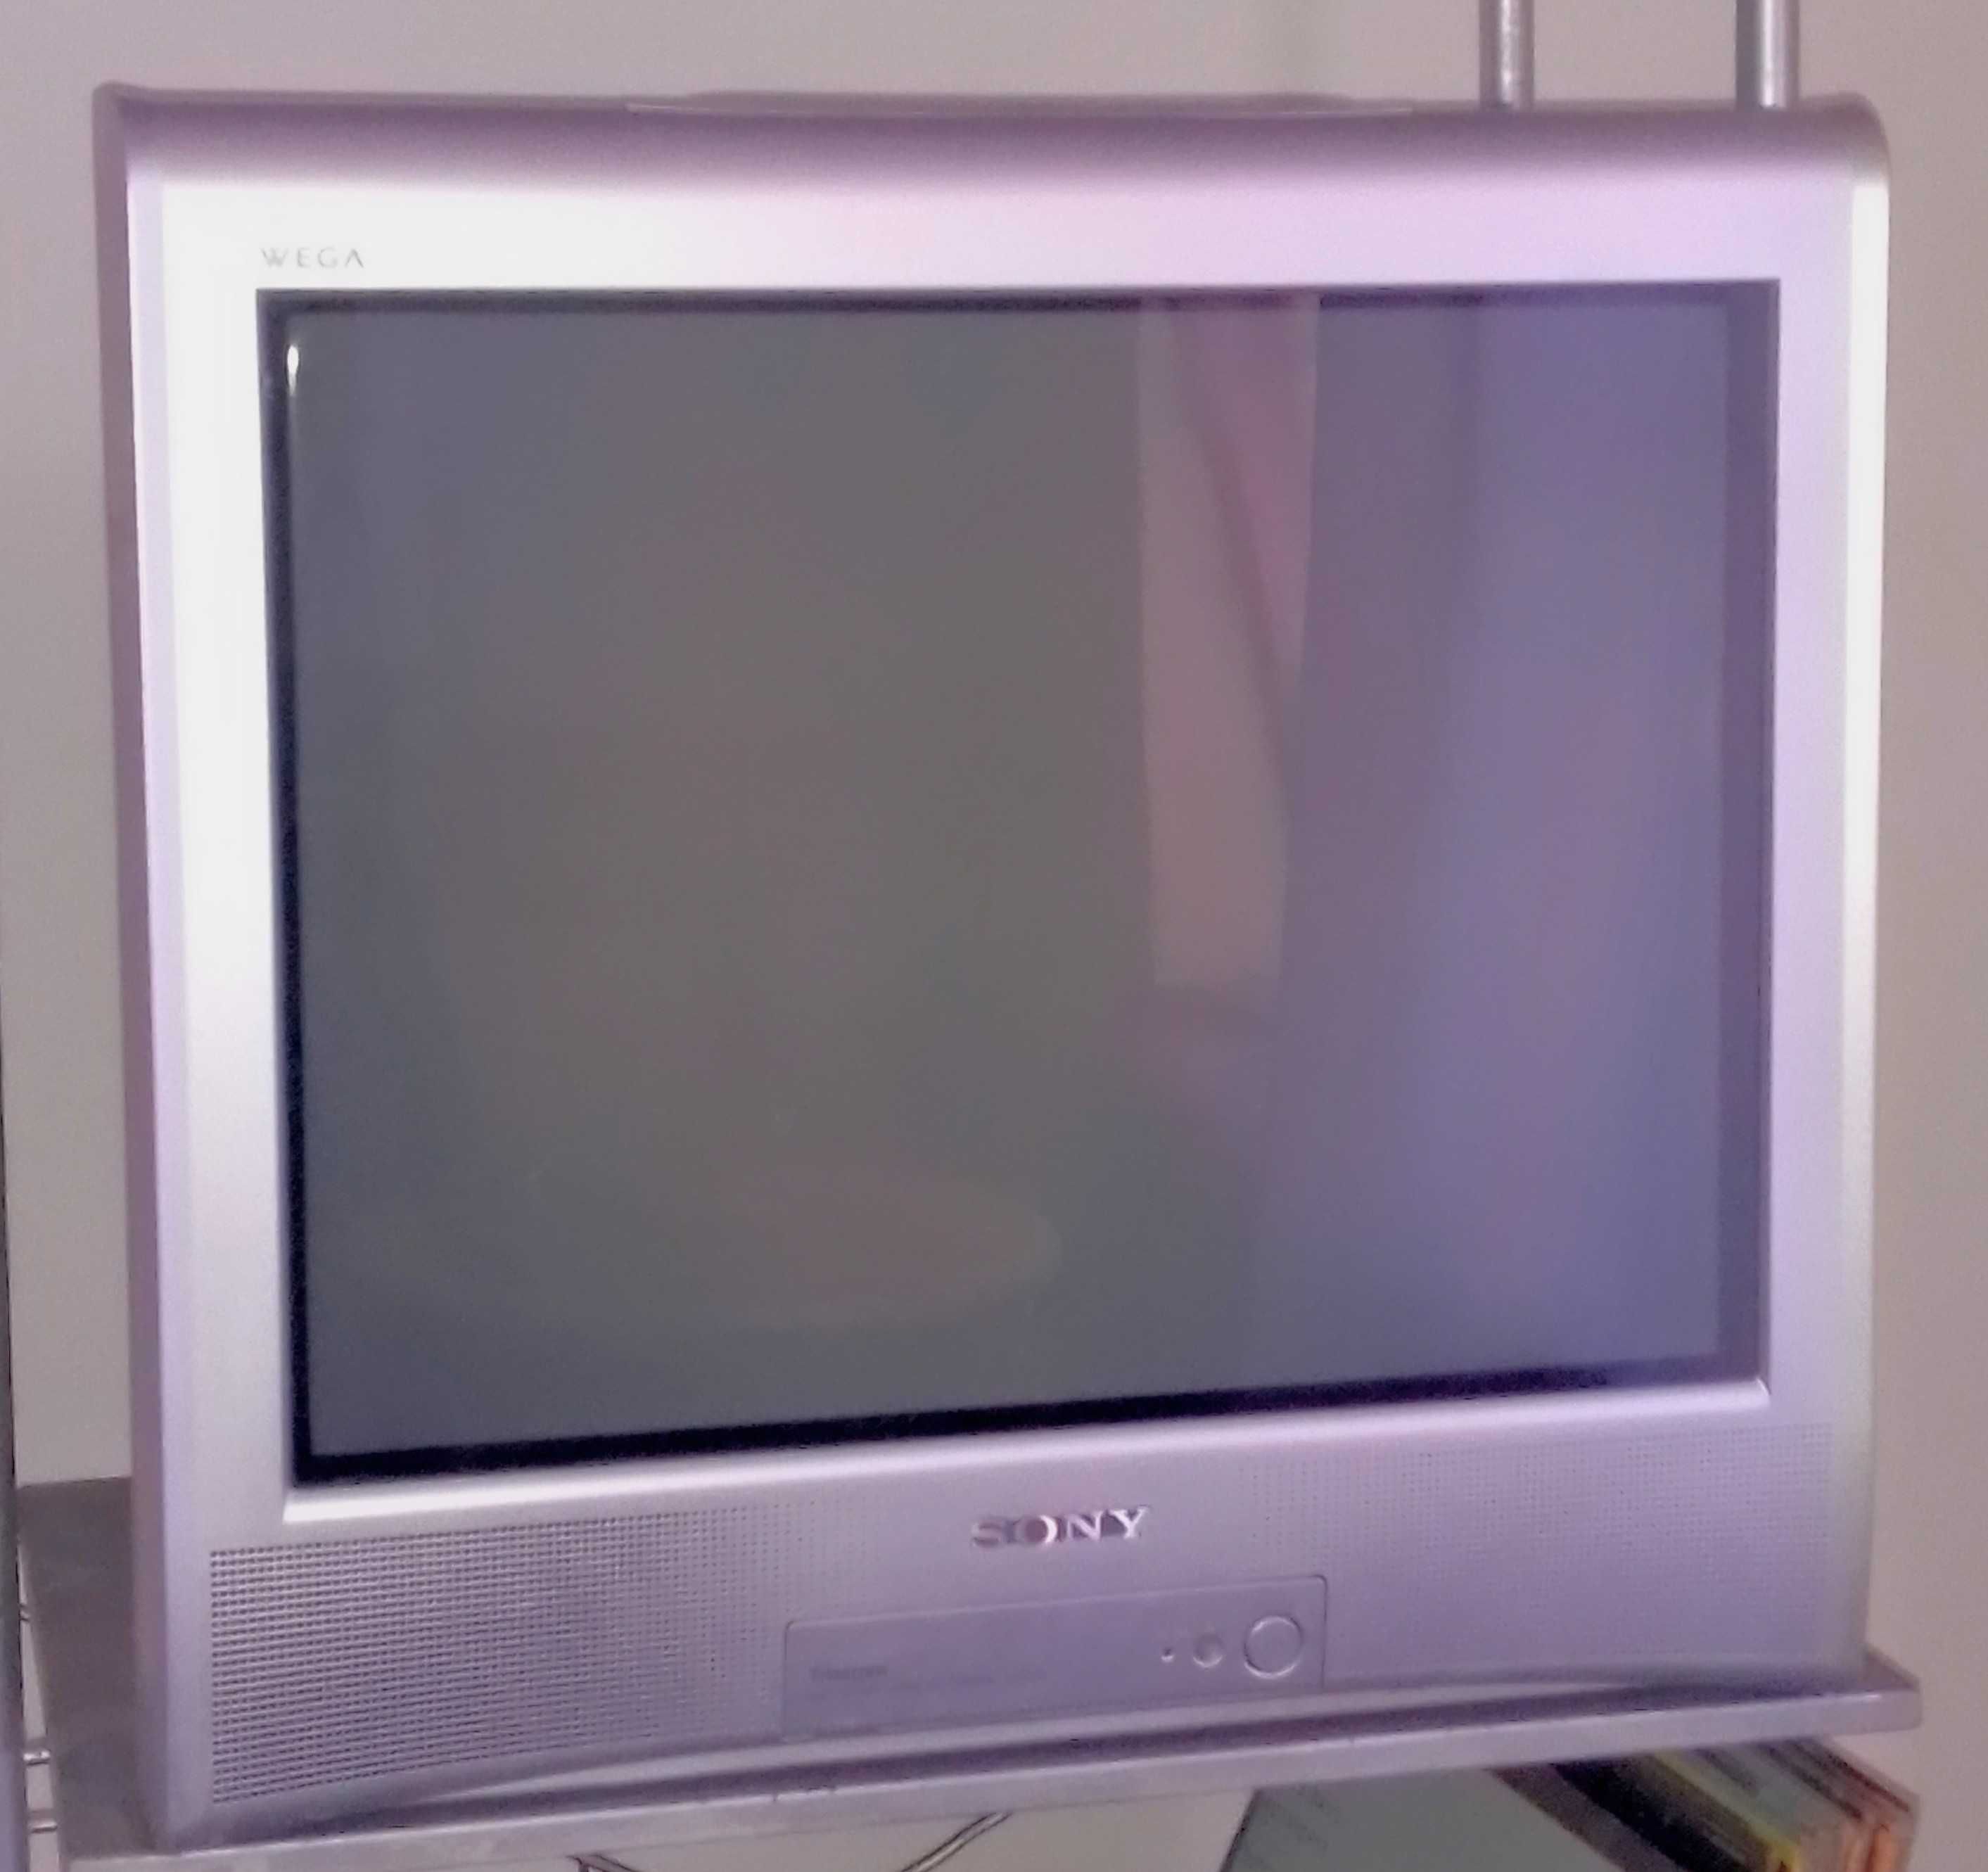 Телевизор SONY, WEGA KV-212, Trinitron Color TV.